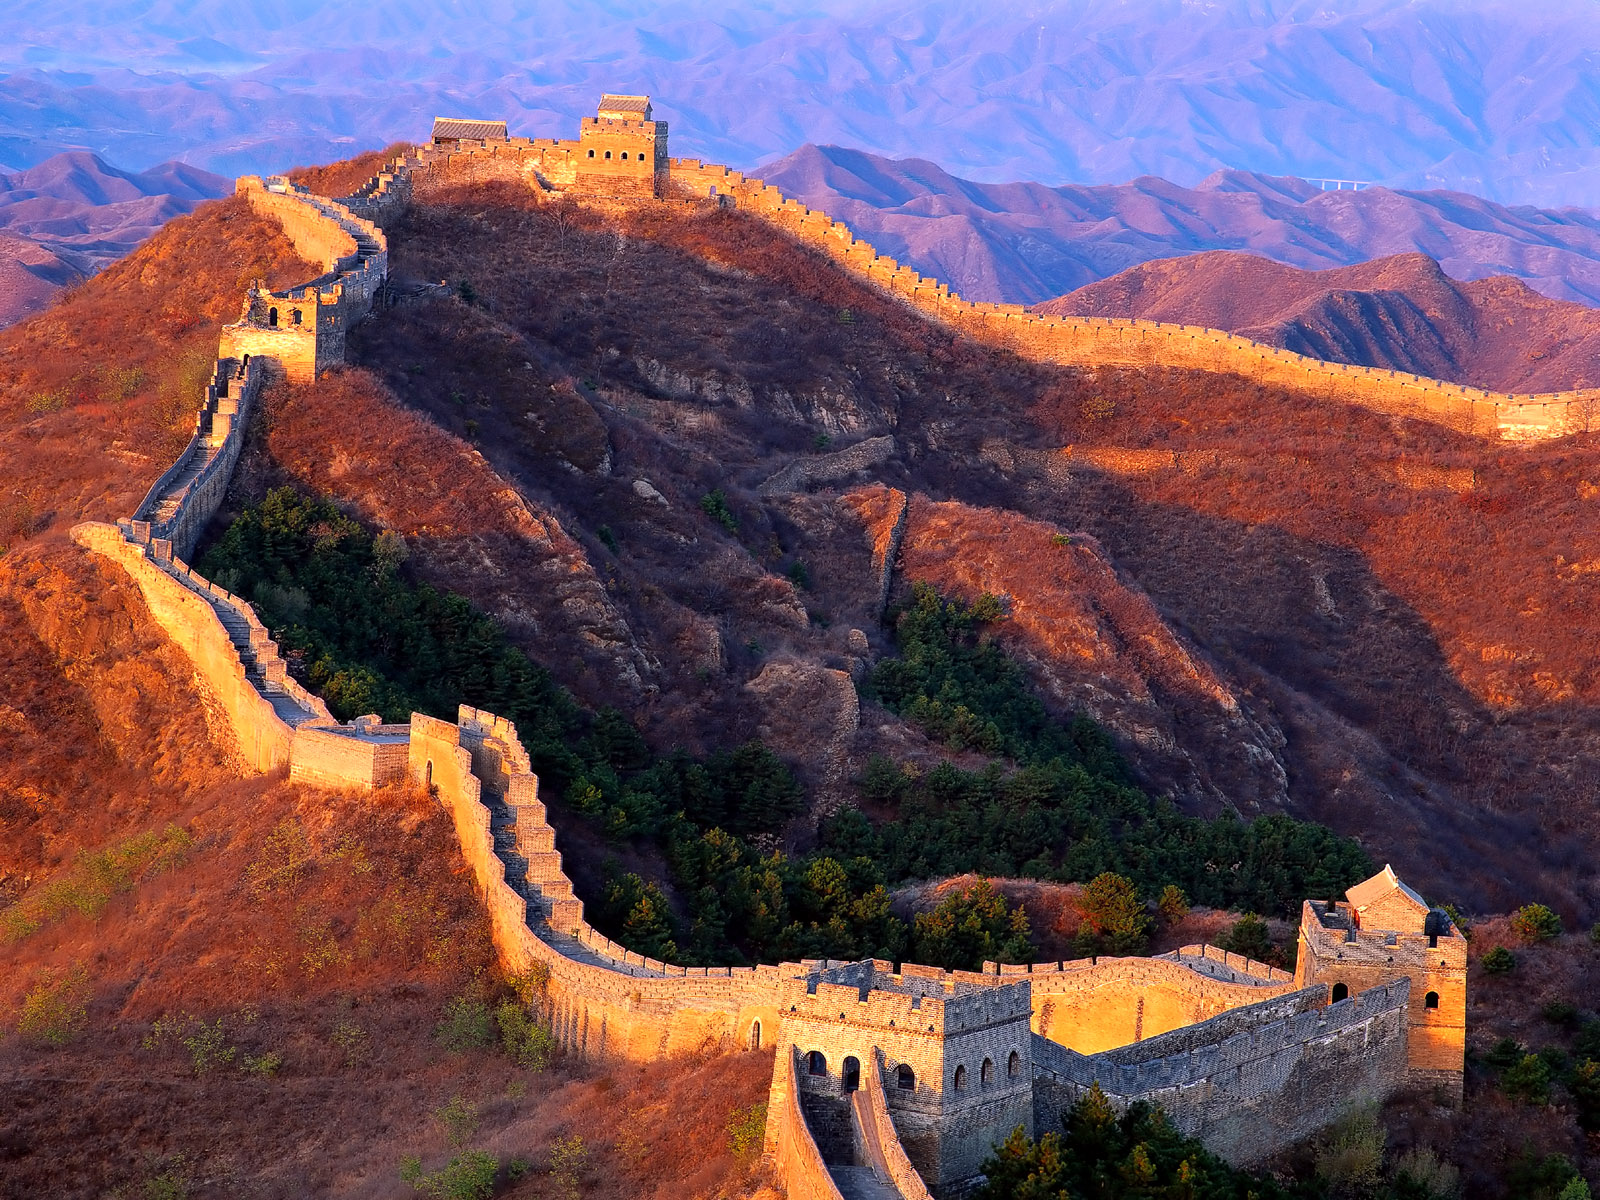 Black Wallpaper Great Wall Of China